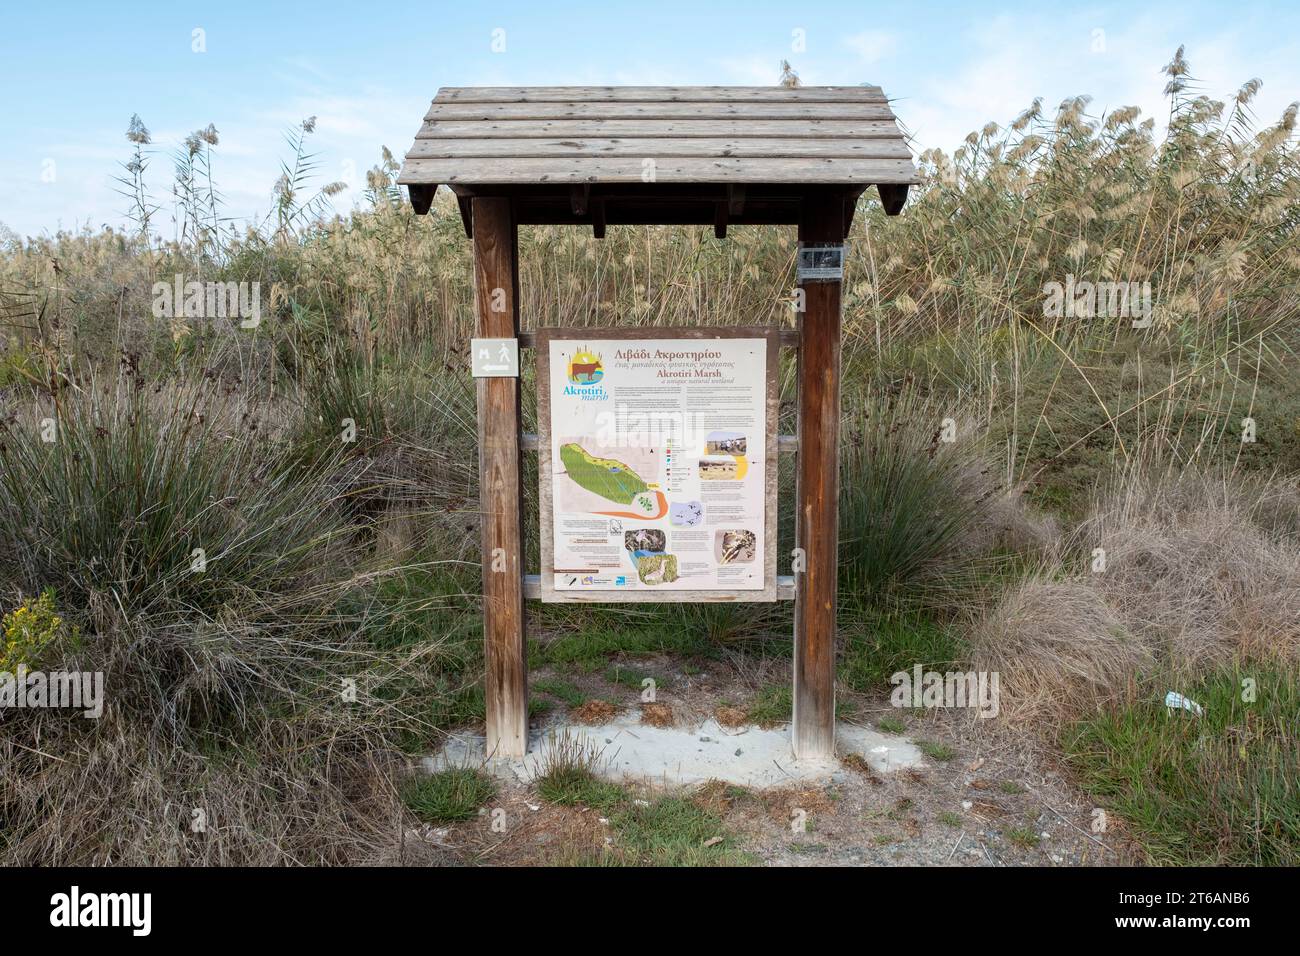 Besucherkarte am Eingang zum Naturreservat Akrotiri Marsh, einem einzigartigen natürlichen Feuchtgebiet auf der Halbinsel Akrotiri, Limassol, Zypern. Stockfoto